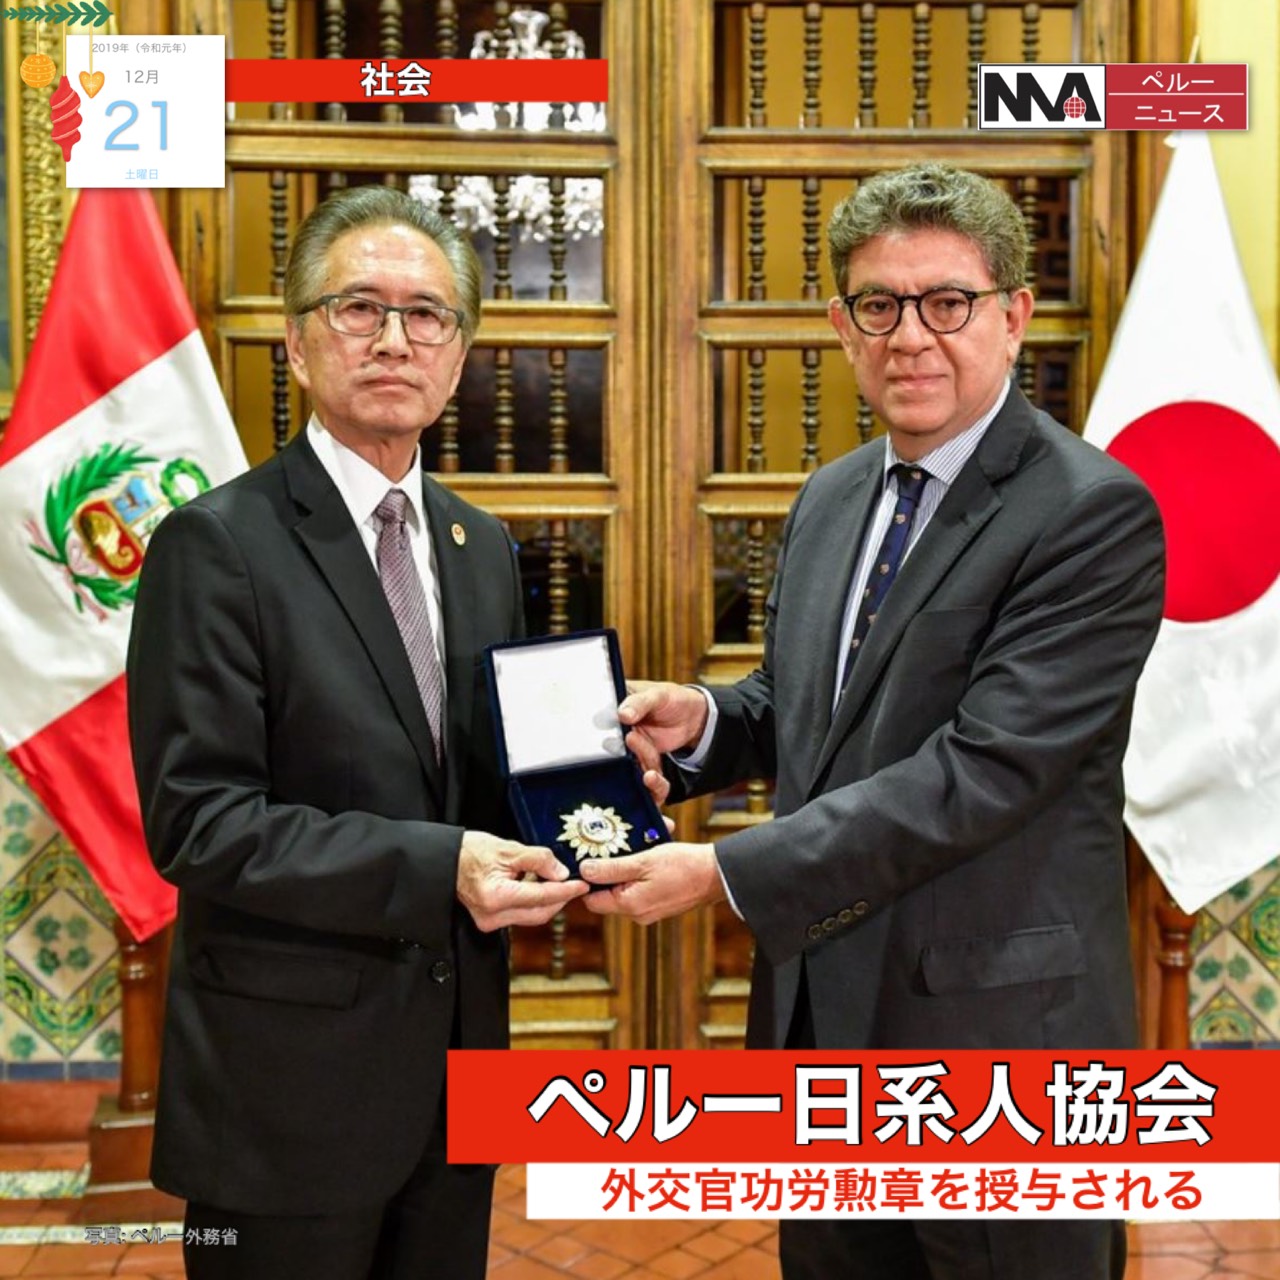 日系人協会、日本ペルー両国の交流を支援。功労勲章を受賞